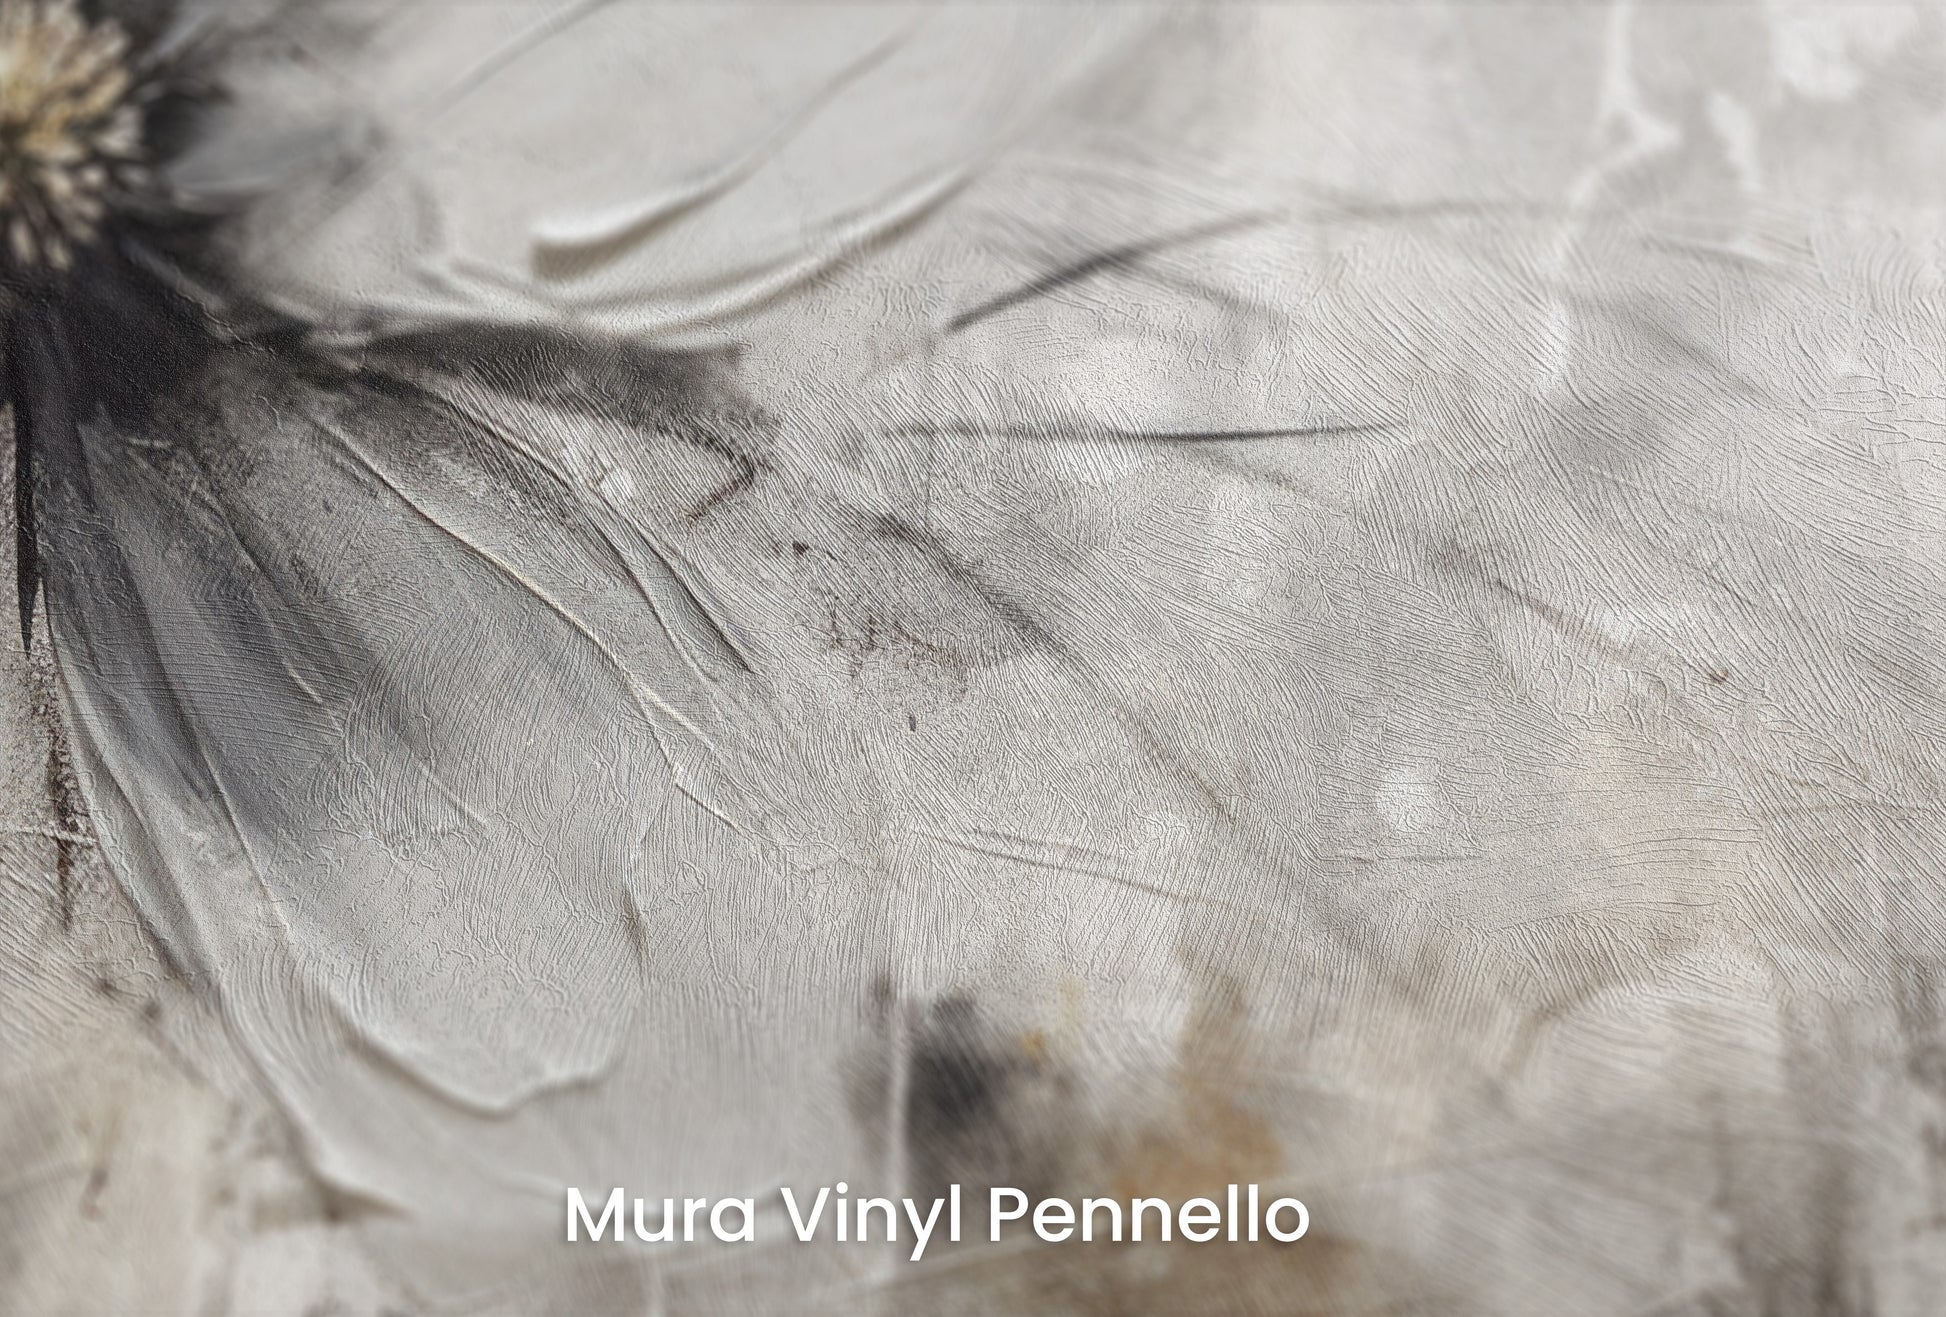 Zbliżenie na artystyczną fototapetę o nazwie MONOCHROME FLORAL ELEGANCE na podłożu Mura Vinyl Pennello - faktura pociągnięć pędzla malarskiego.